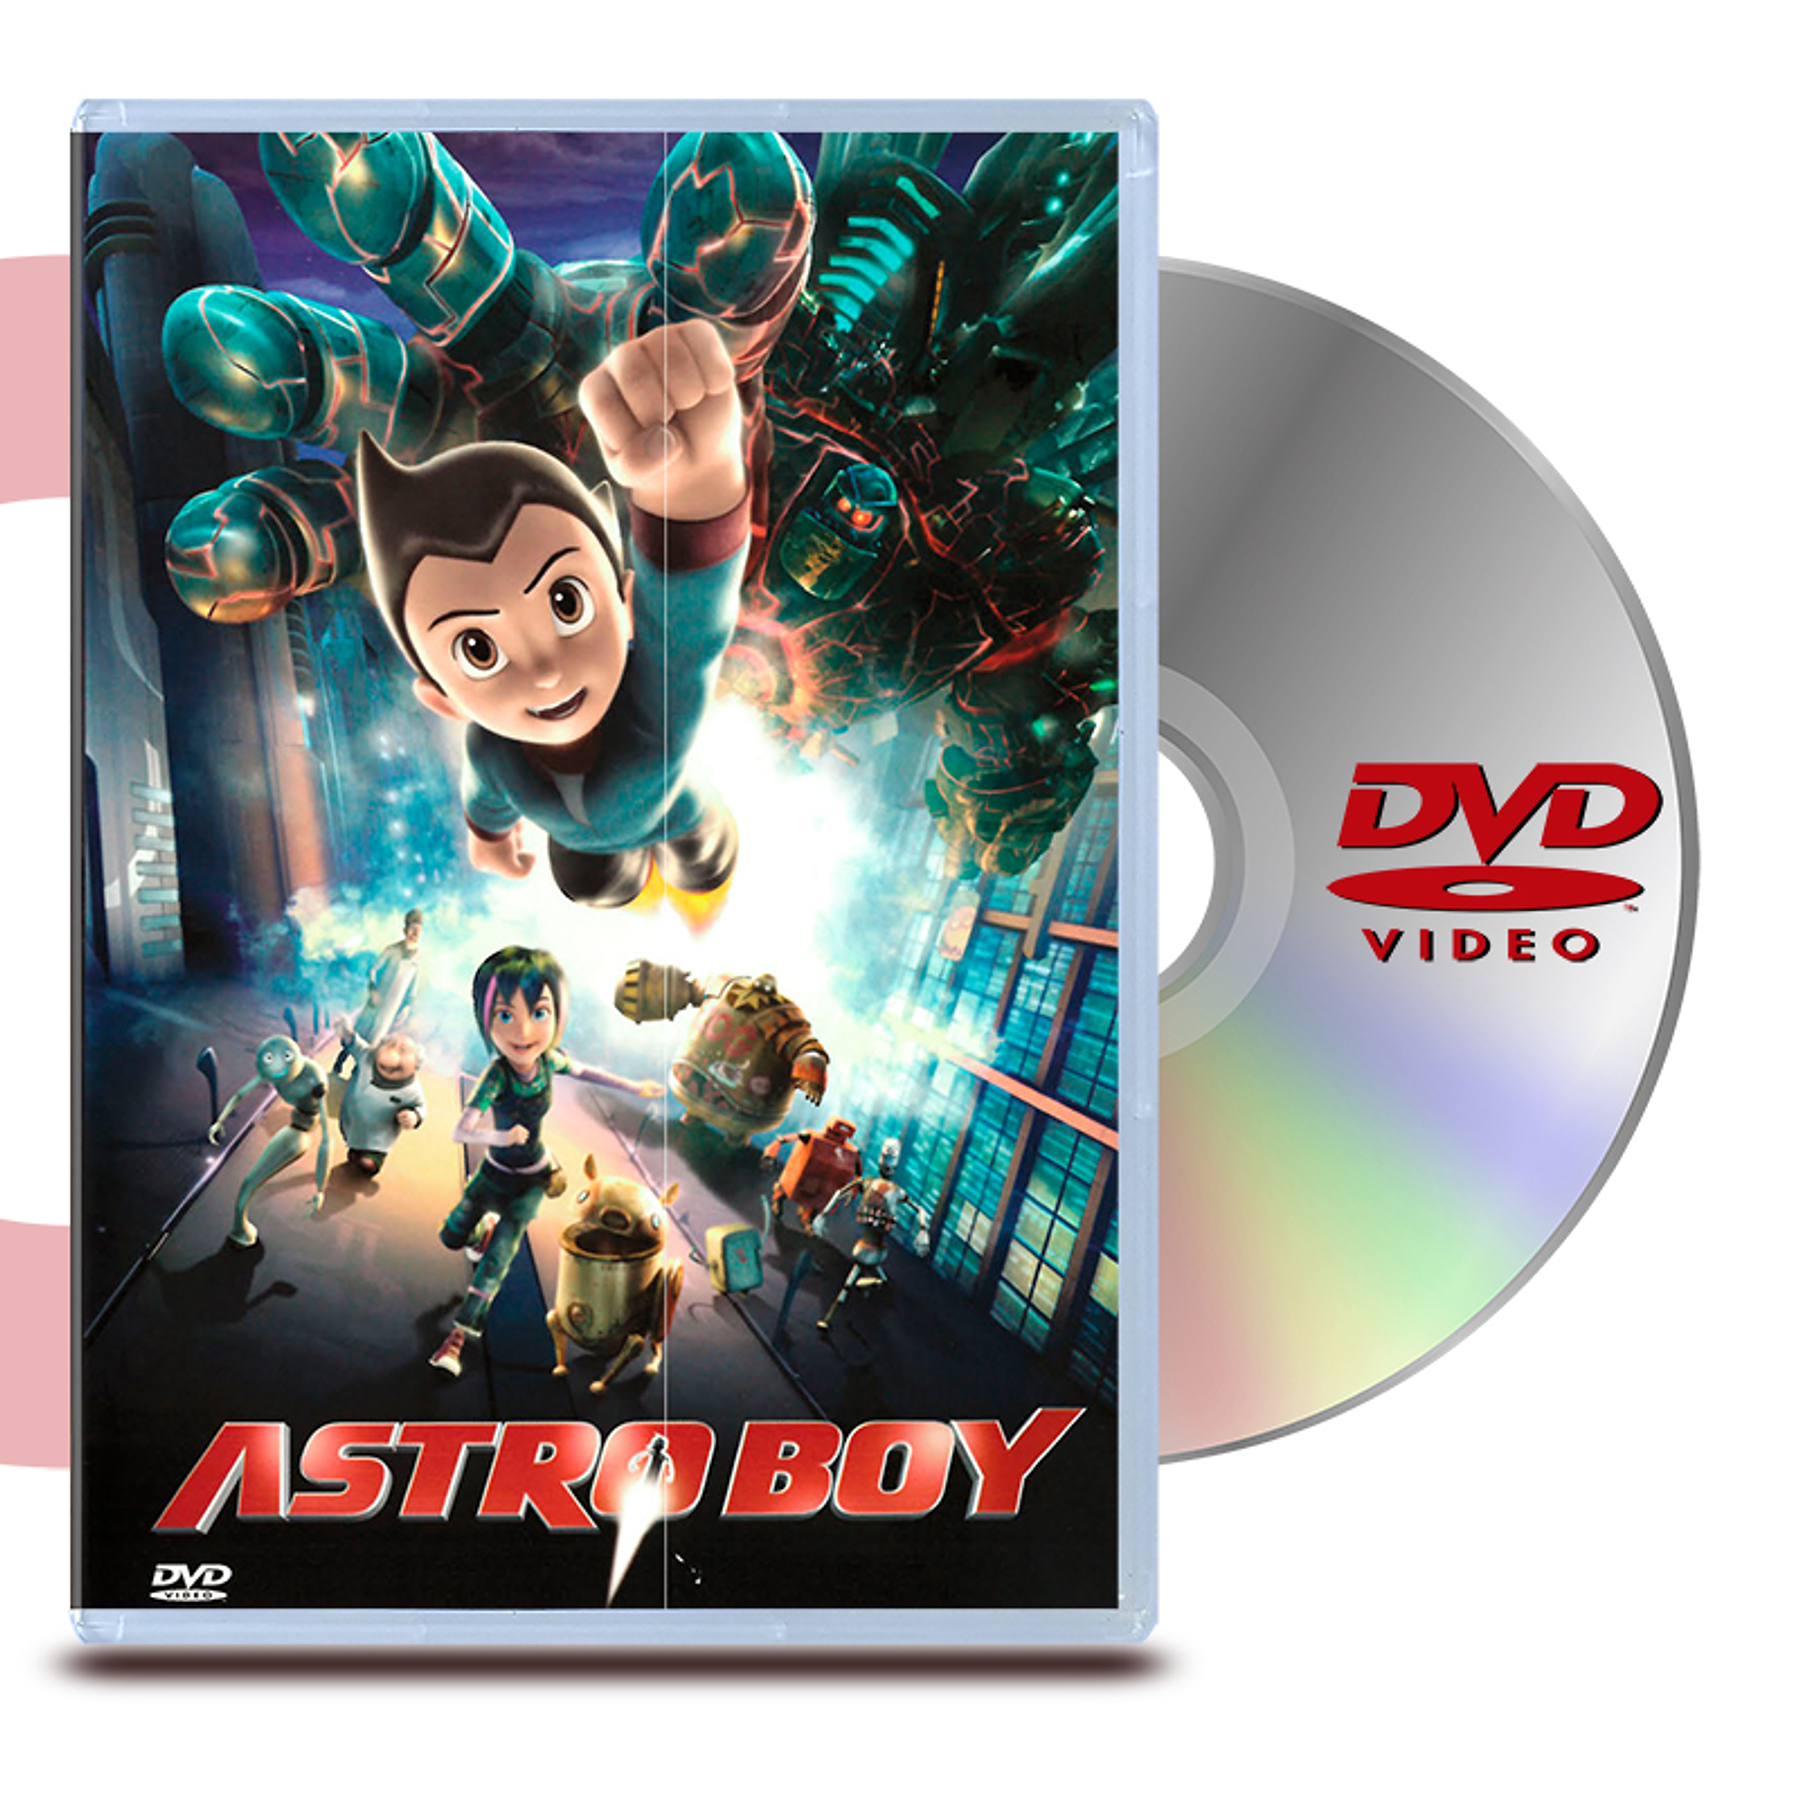 DVD ASTRO BOY: LA PELICULA